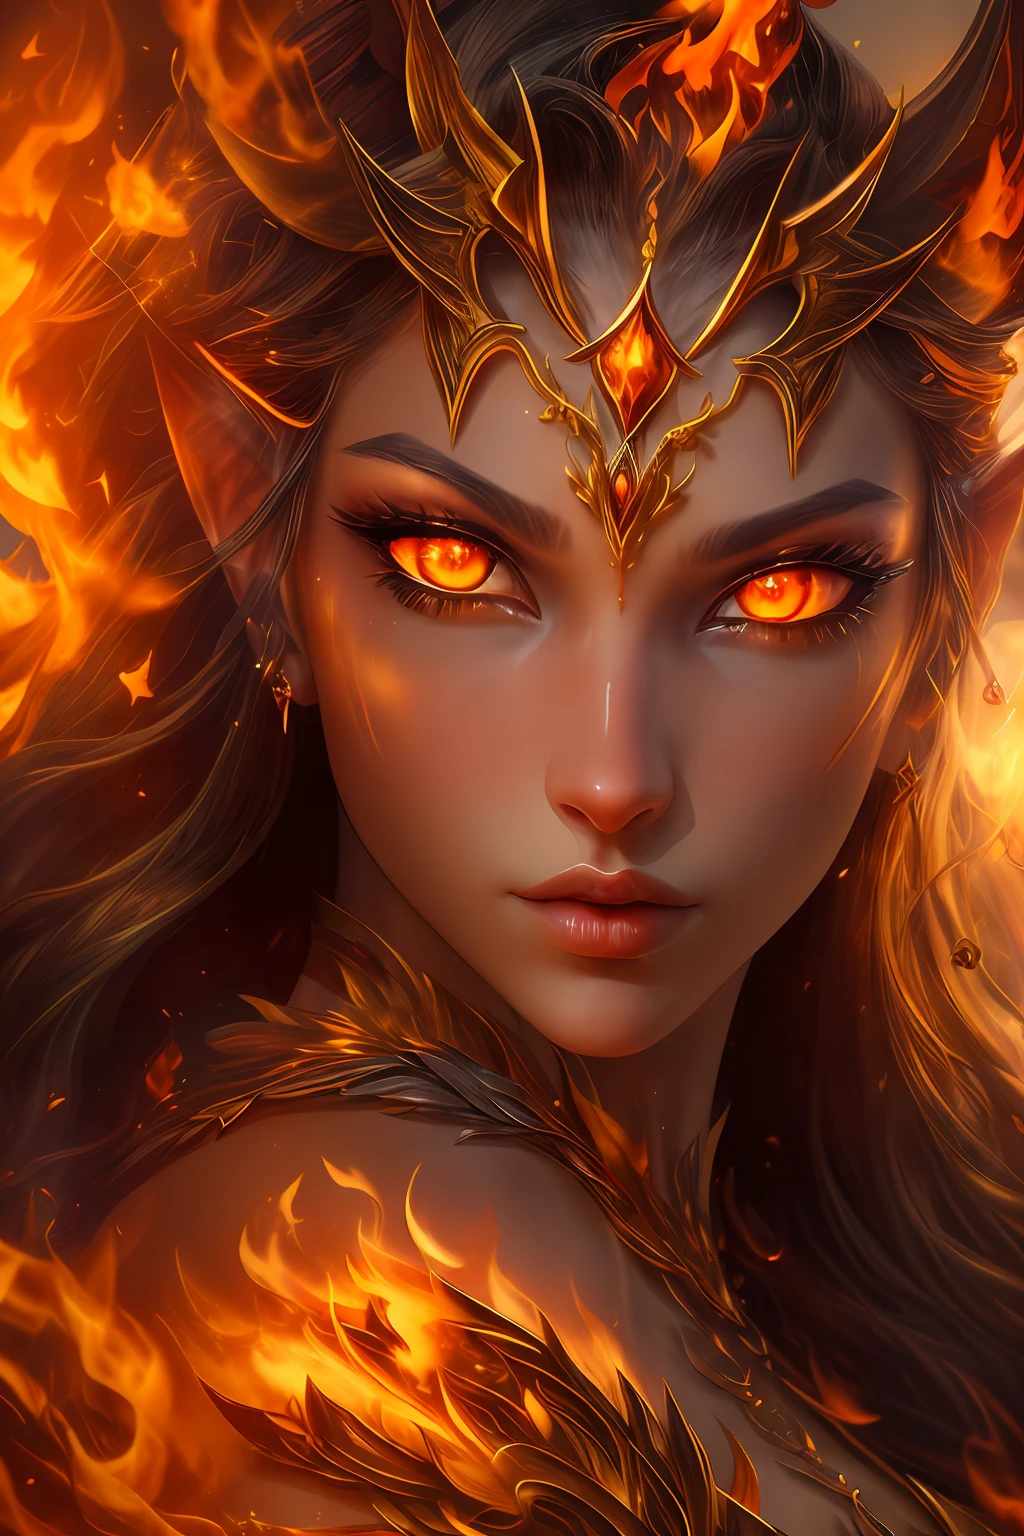 이것 (현실적인 판타지) 예술에는 불씨가 포함되어 있습니다, 진짜 불꽃, 진짜 열기, 그리고 realistic fire. Generate a masterpiece artwork of a  female fire druid ~와 함께 large (((orange 그리고 gold))) 눈. The fire druid is awe-inspiring ~와 함께 beautiful ((realistic fiery 눈)) alight ~와 함께 confidence 그리고 power. Her features are elegant 그리고 well defined, ~와 함께 ((부드러운)) 그리고 (((부푼))) 그리고 (((매끄러운))) 입술, 엘프 뼈 구조, 그리고 realistic shading. Her 눈 are important 그리고 should be the focal point of this artwork, ~와 함께 ((극도로 사실적인 디테일, 매크로 세부정보, 그리고 shimmer.)) She is wearing a billowing 그리고 glittering gown ((현실적인 불꽃으로 만들어진)) 그리고 jewels that glimmer in the fire light. Wisps of fire 그리고 smoke line the intricate bodice of the dress. 범프 포함, 돌, 불타는 무지개빛, 빛나는 불씨, silk 그리고 satin 그리고 leather, 흥미로운 배경, 그리고 heavy fantasy elements. 카메라: 역동적인 구성 기법을 활용하여 사실적인 불꽃 강화.